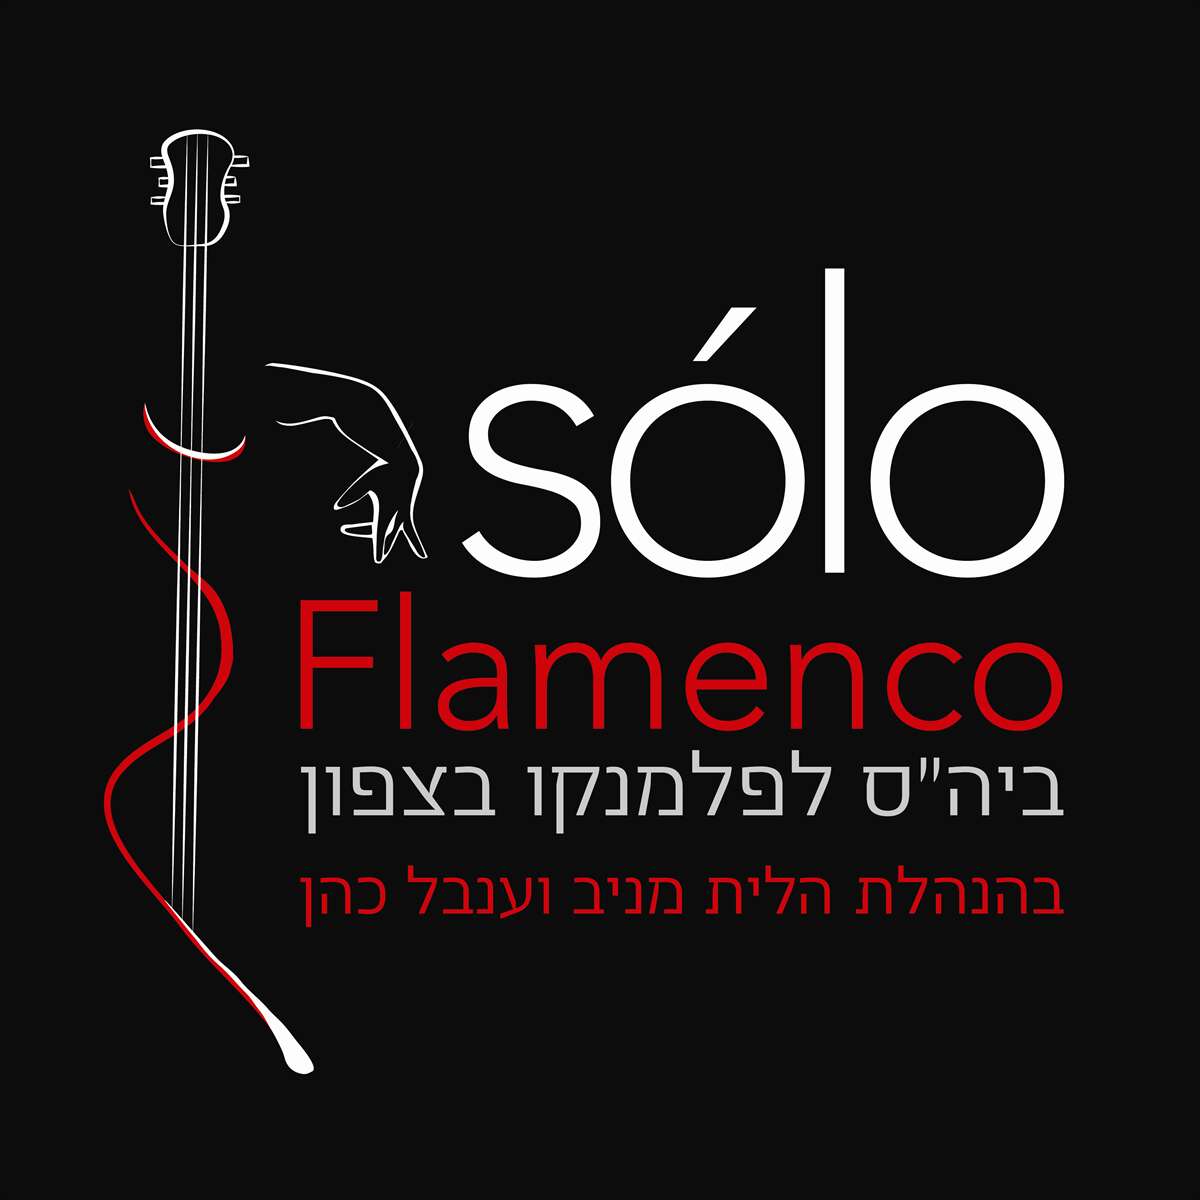 שיעורי פלמנקו בחיפה ובקריות  - סולו פלמנקו Sólo Flamenco - דרך גוף